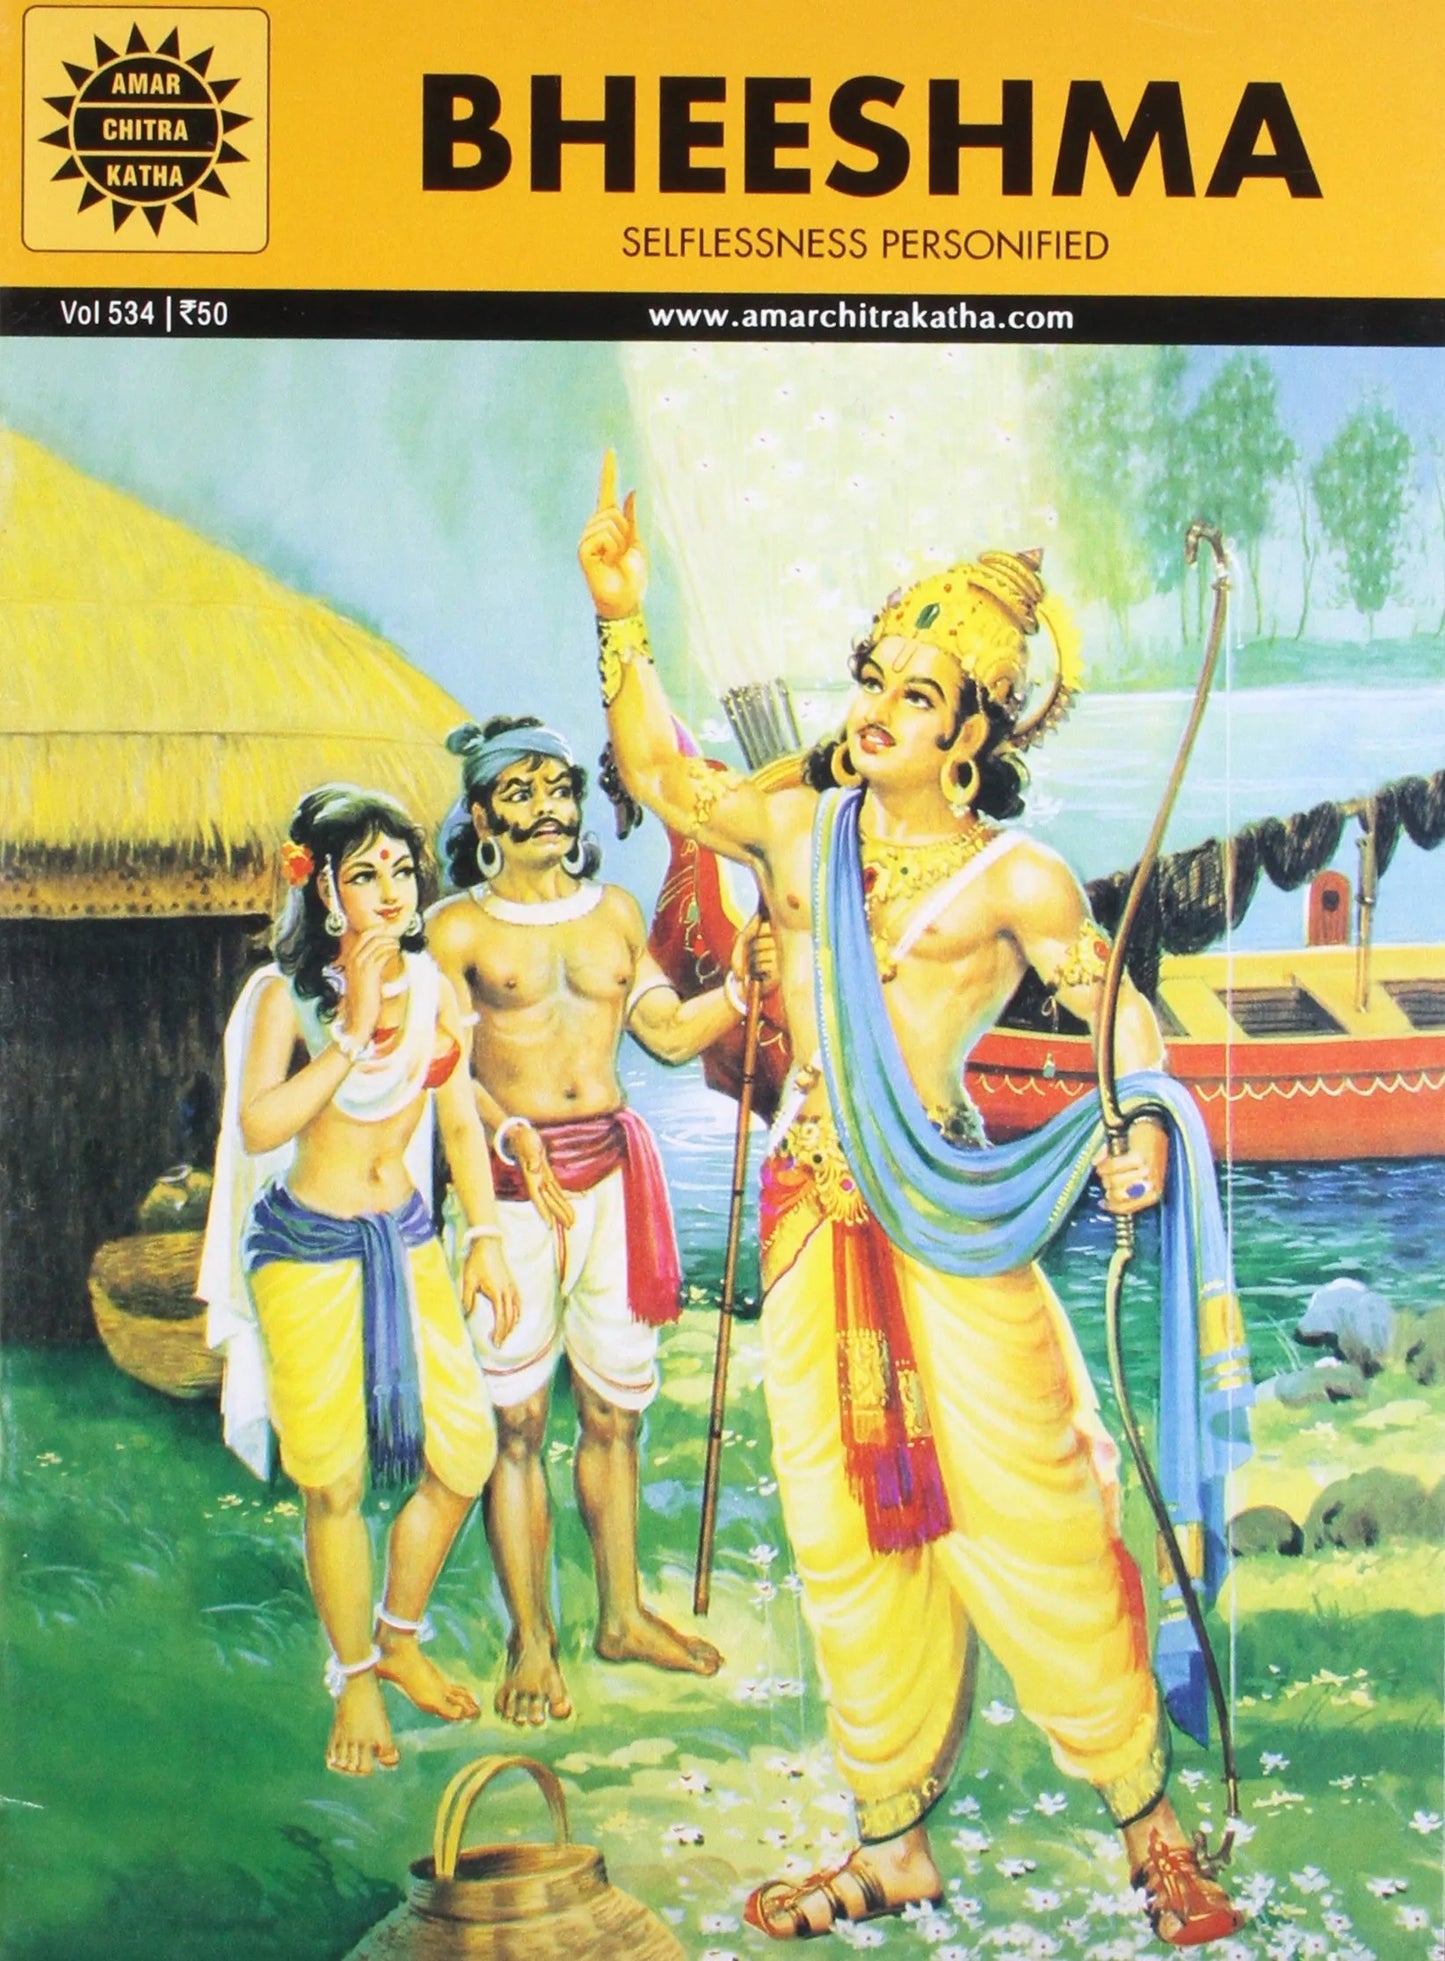 Amar Chitra Katha - Bheeshma - Selflessness Personified